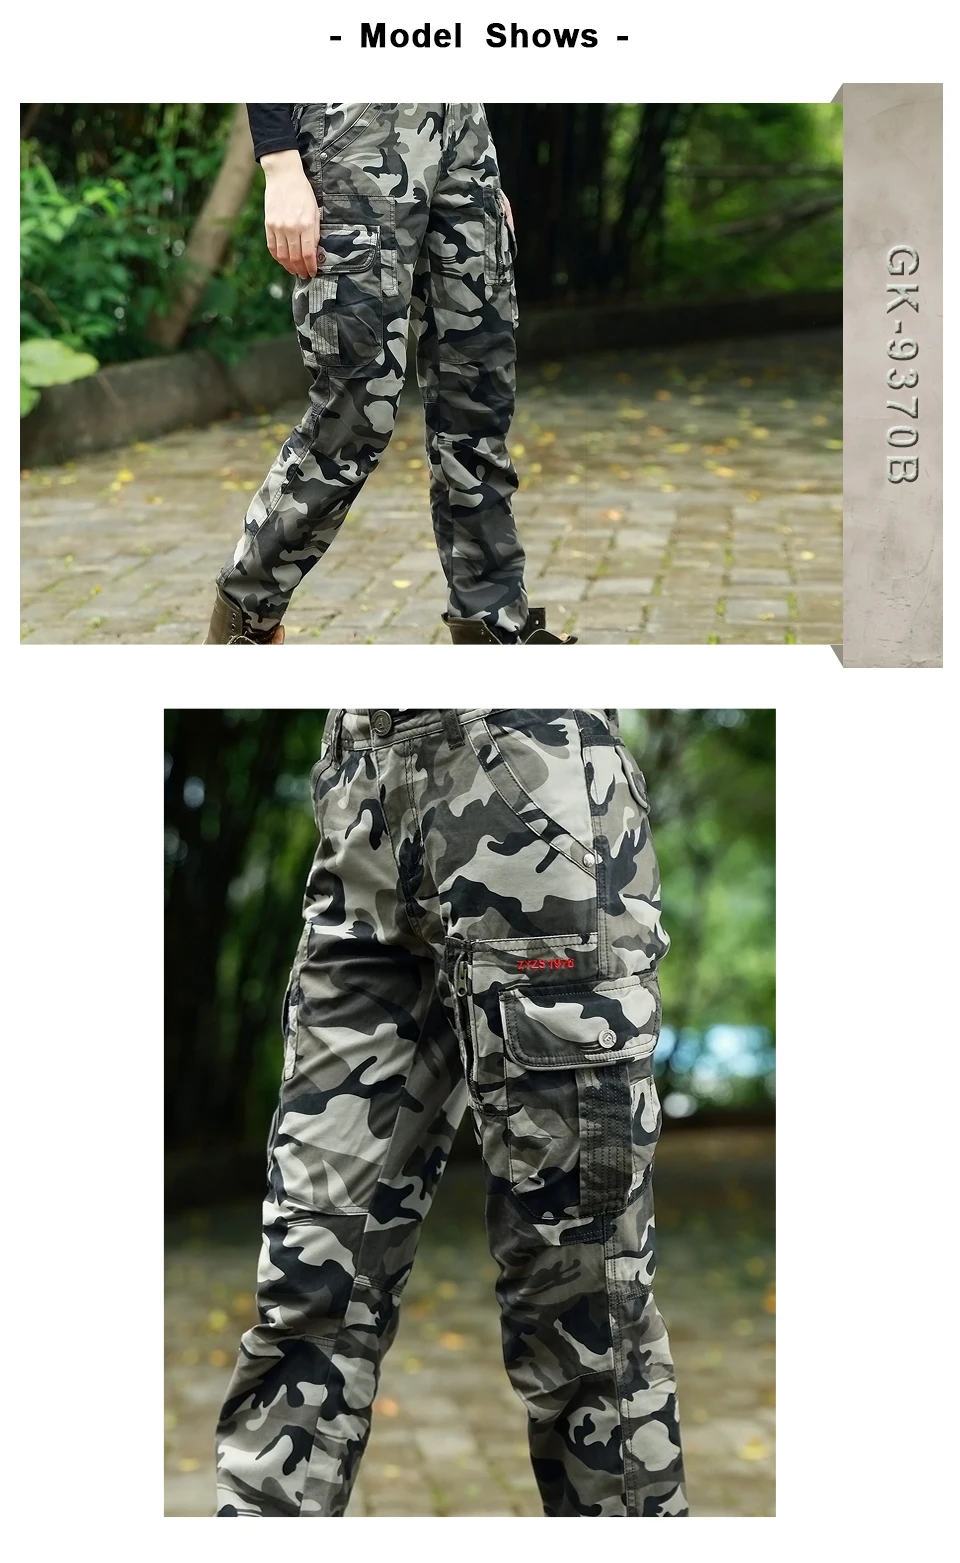 Брендовые военные брюки камуфляж женские брюки средняя талия саржа хлопок повседневные спортивные брюки для досуга Капри женские брюки осень